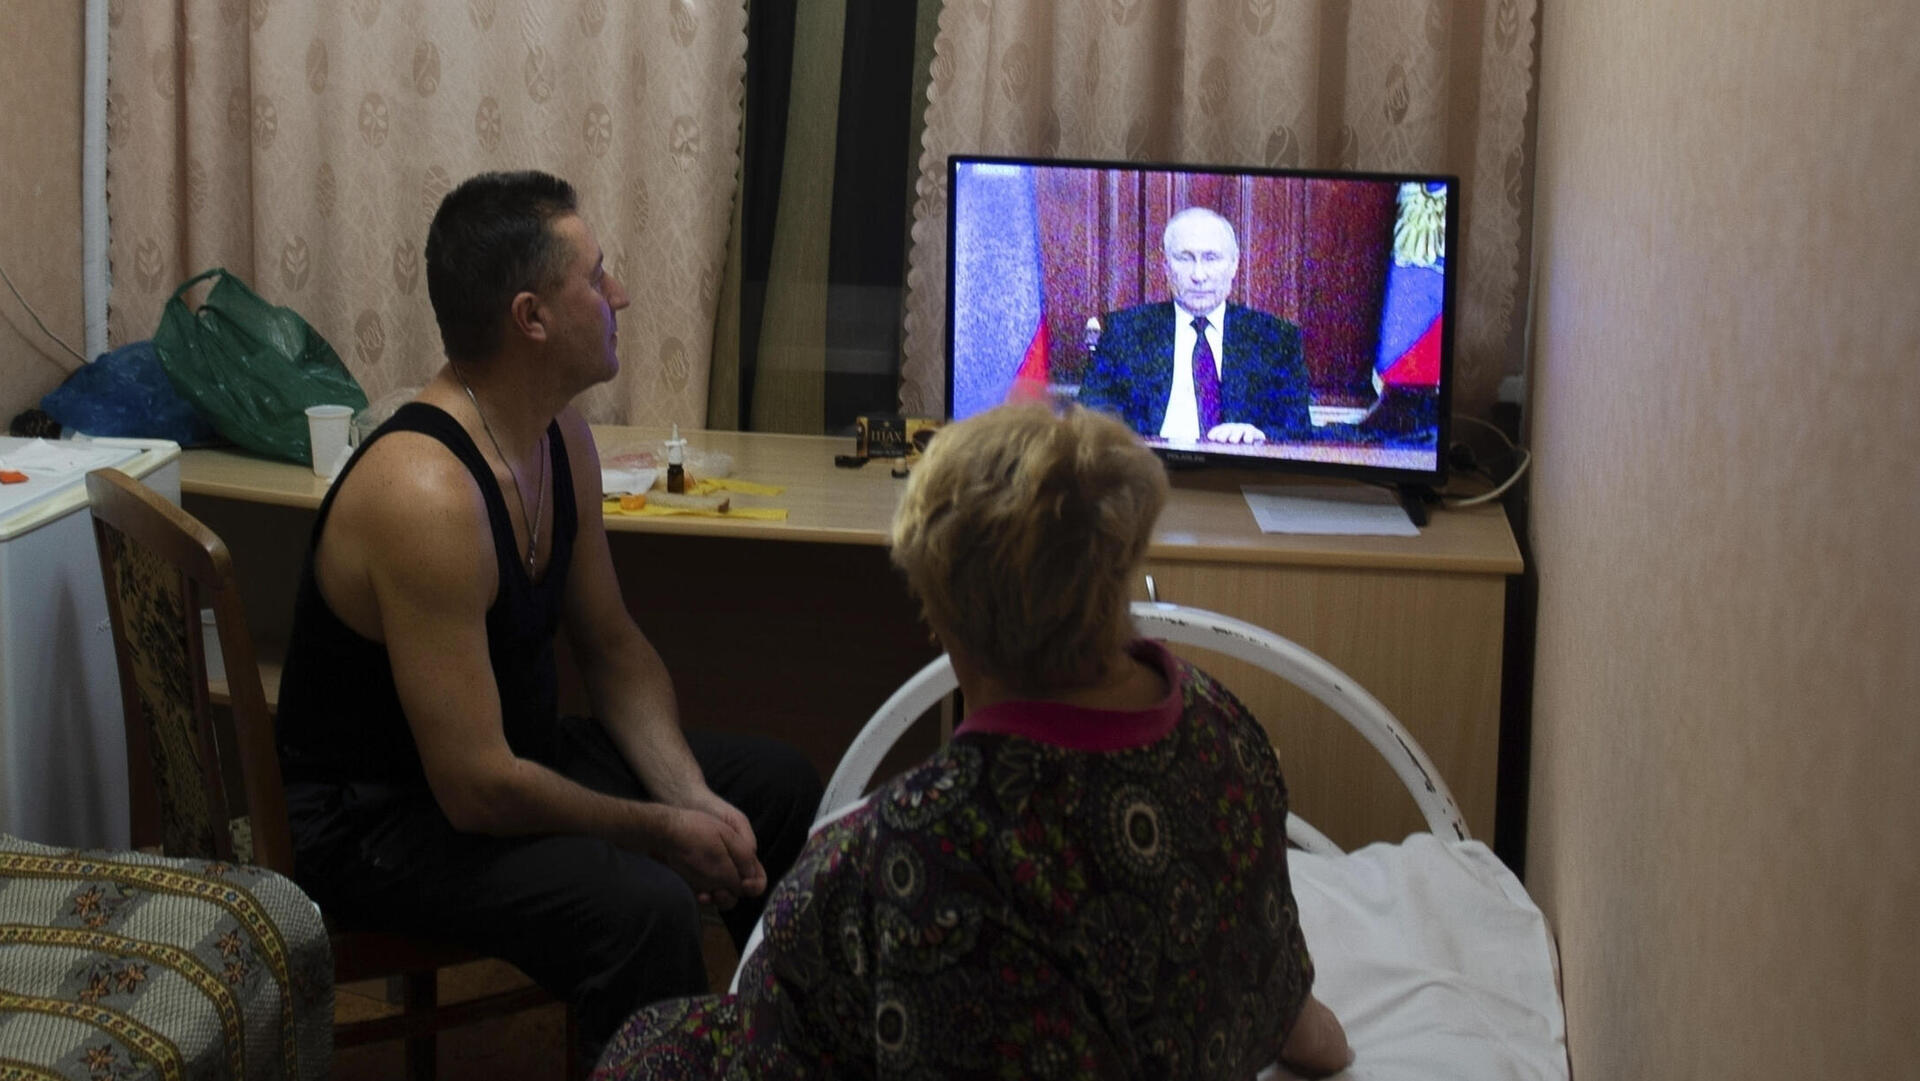 אנשים ב דונייצק ו לוהנסק צופים ב ולדימיר פוטין ב טלוויזיה